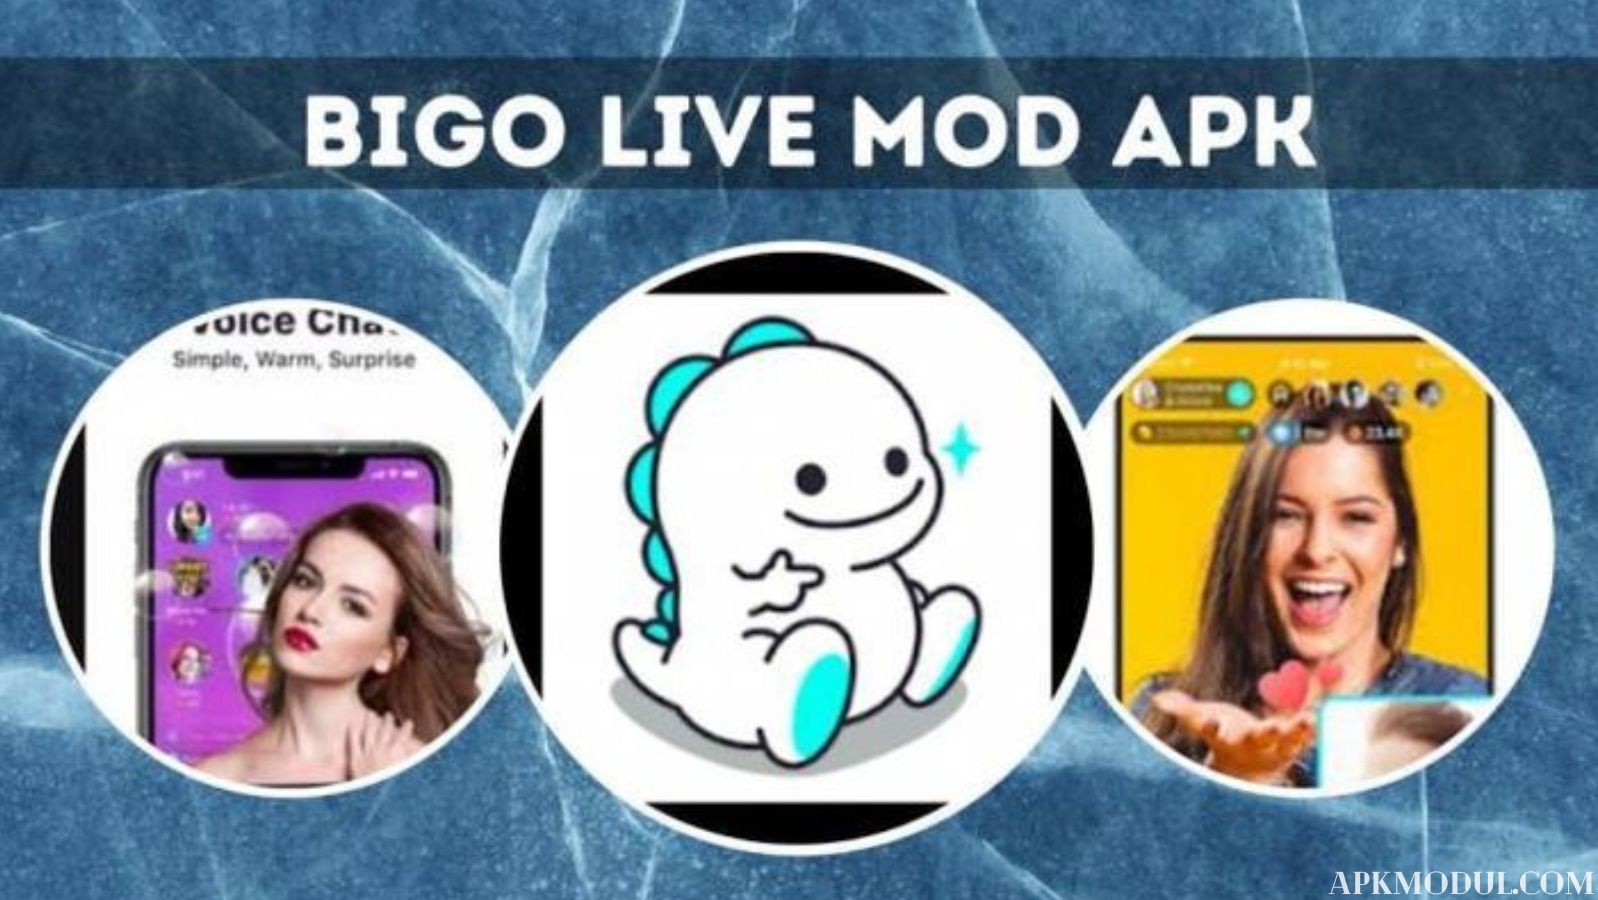 Bigo Live Mod App